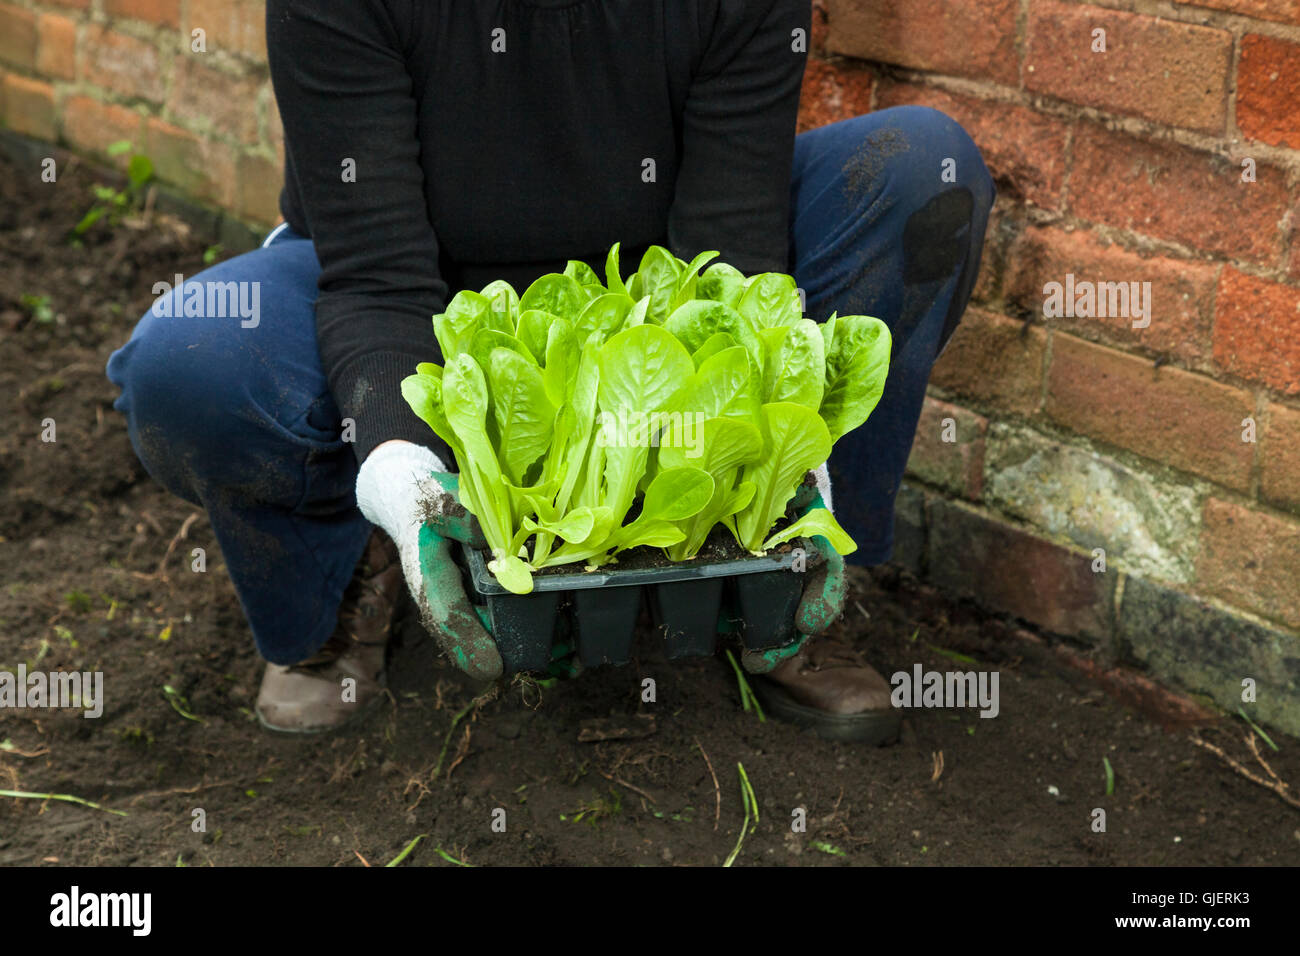 Les jeunes laitues. Une personne avec un bac à plantes laitue prêts pour la plantation dans un jardin ou d'attribution, England, UK Banque D'Images